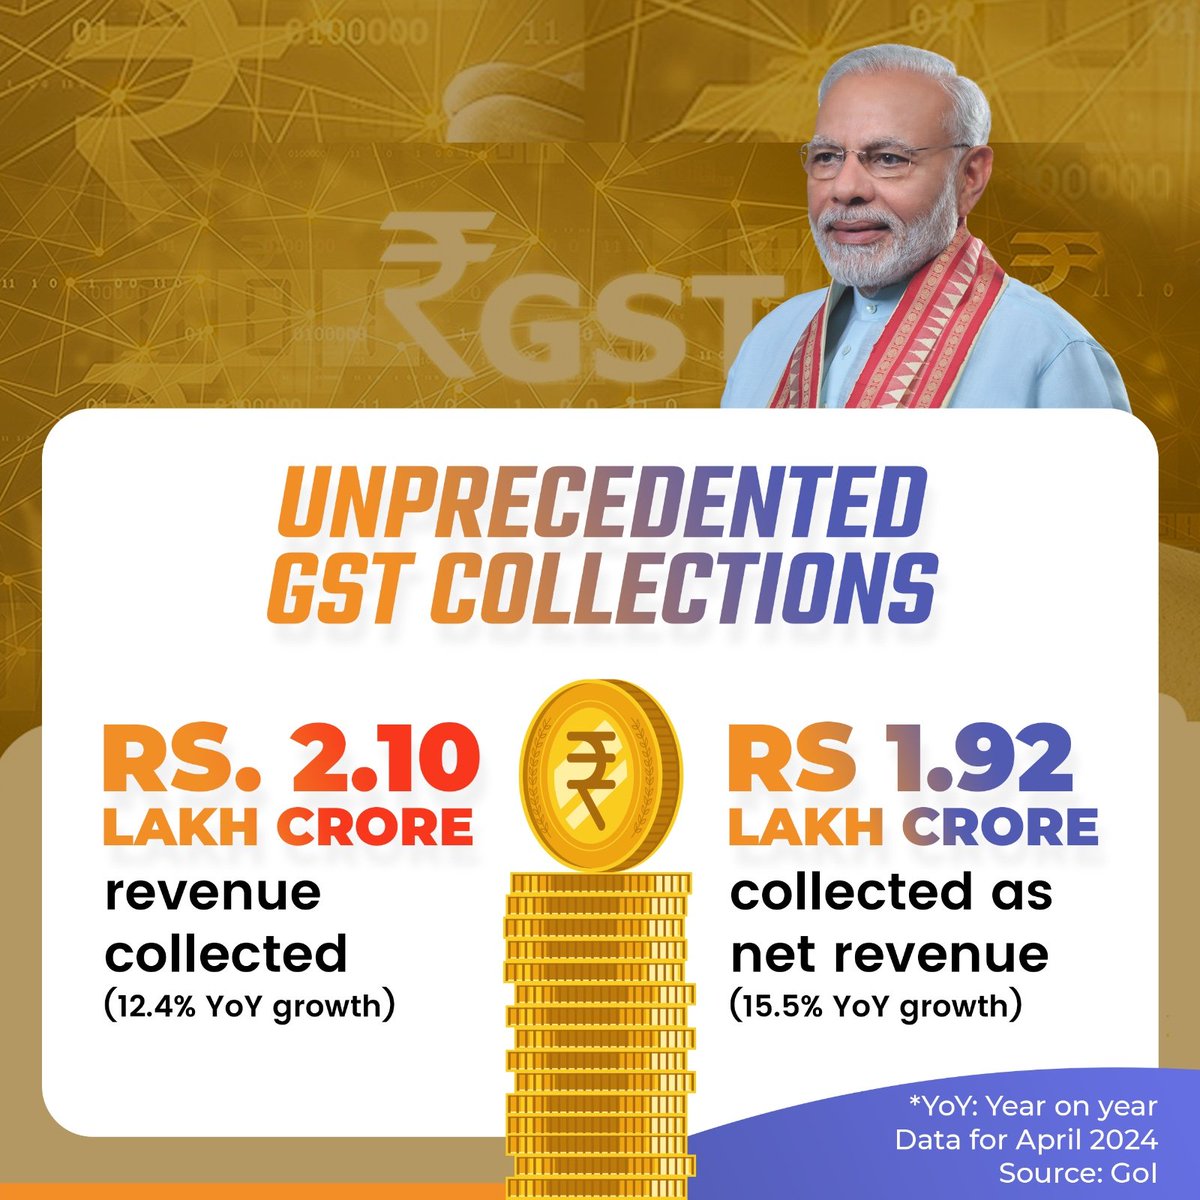 वाकई में देश में बहुत मंदी है 😱 रिकॉर्डतोड़ GST कलेक्शन🔥अप्रैल 2024 में जीएसटी कलेक्शन ₹2 लाख करोड़ के मील के पत्थर को पार किया। भारत की यह उल्लेखनीय उपलब्धि हमारी समृद्ध अर्थव्यवस्था और प्रत्येक नागरिक के सामूहिक योगदान का प्रमाण है। #GSTCollection